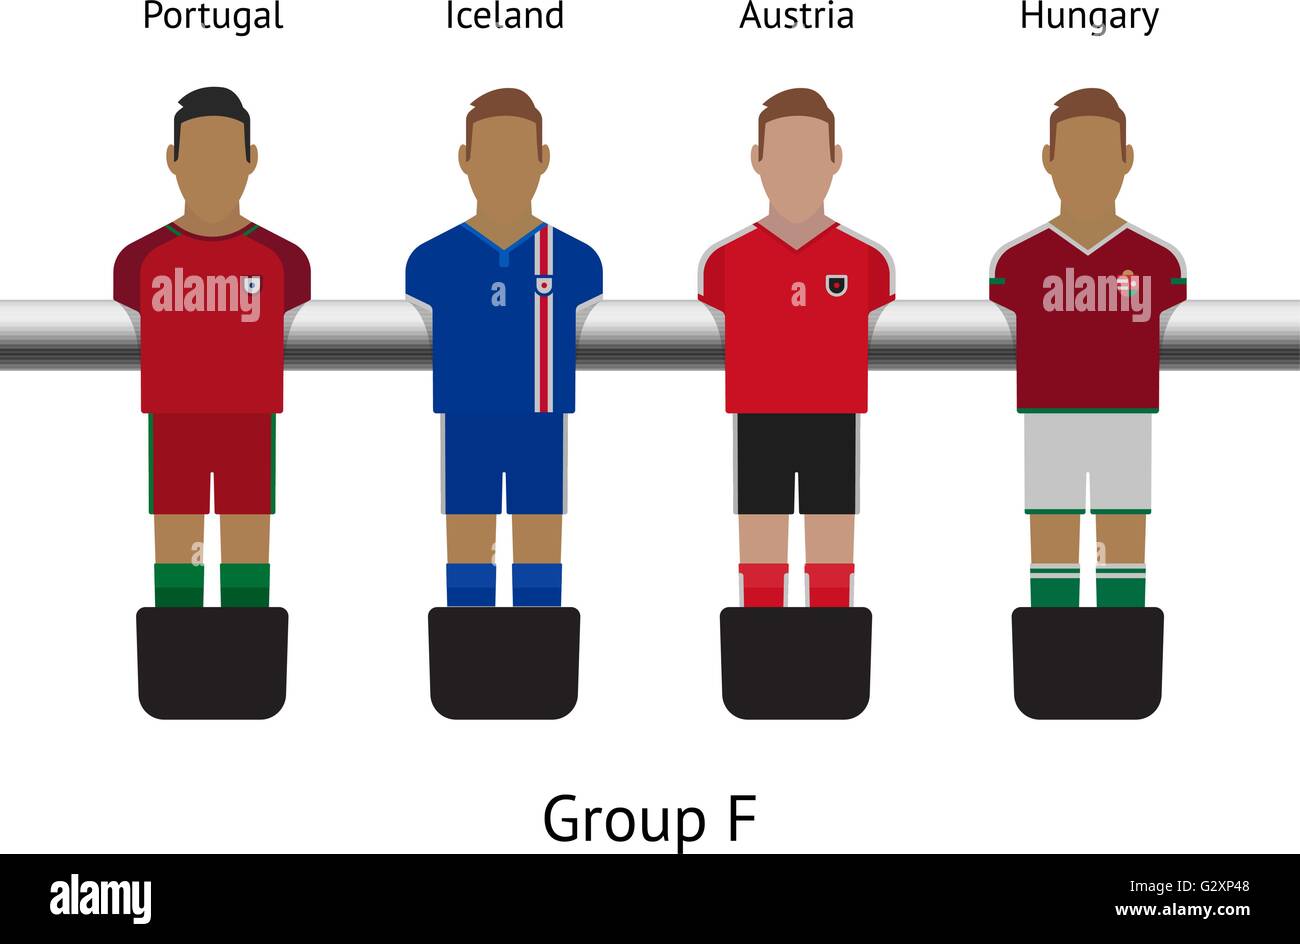 Tisch-Fußball-Spiel. Kicker Fussball Spieler gesetzt. Portugal, Island,  Österreich, Ungarn Stock-Vektorgrafik - Alamy